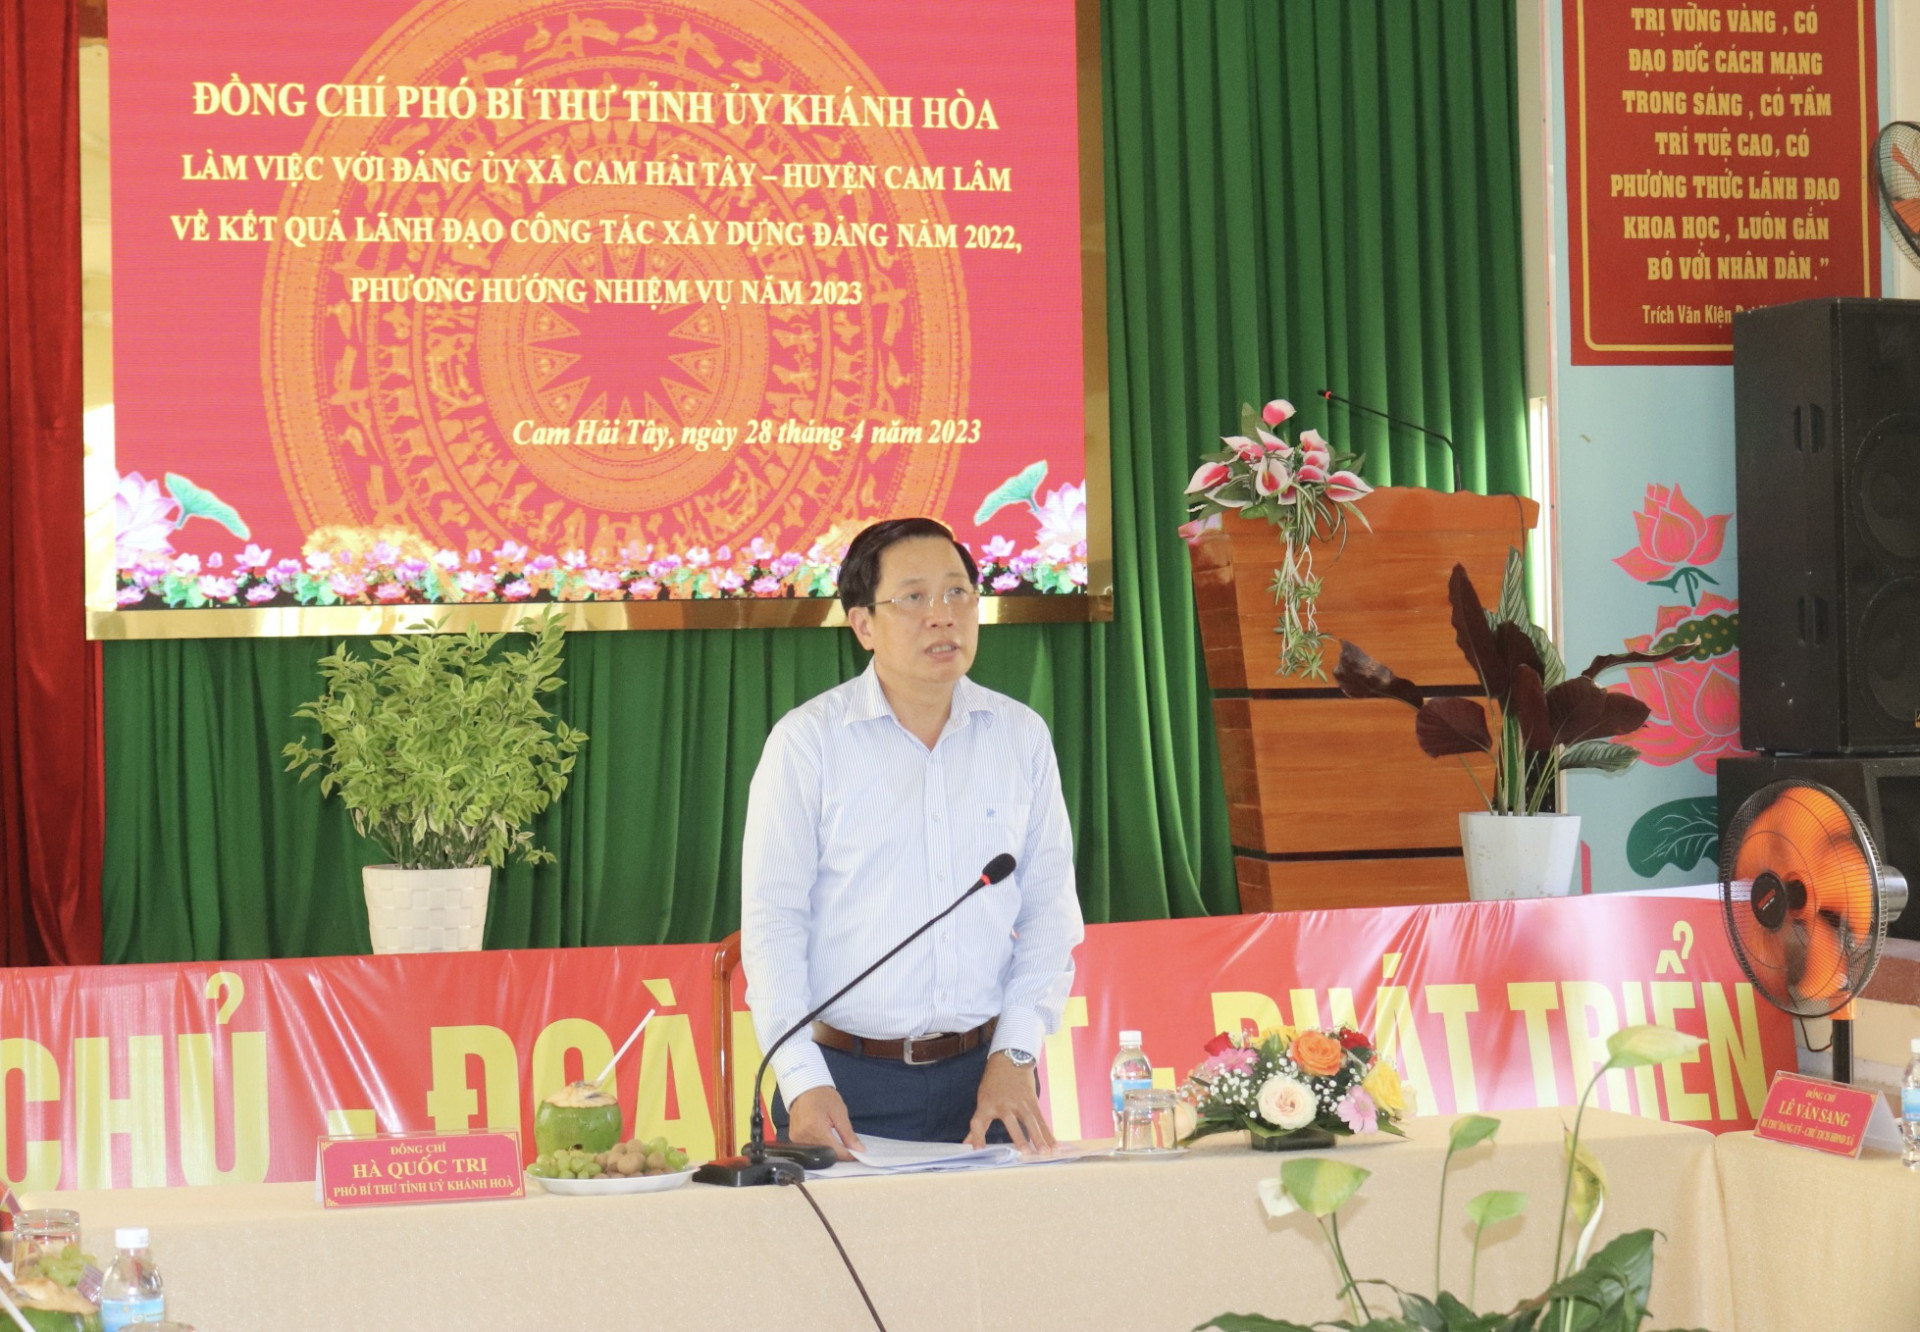 Ông Hà Quốc Trị làm việc về công tác xây dựng Đảng tại xã Cam Hải Tây.